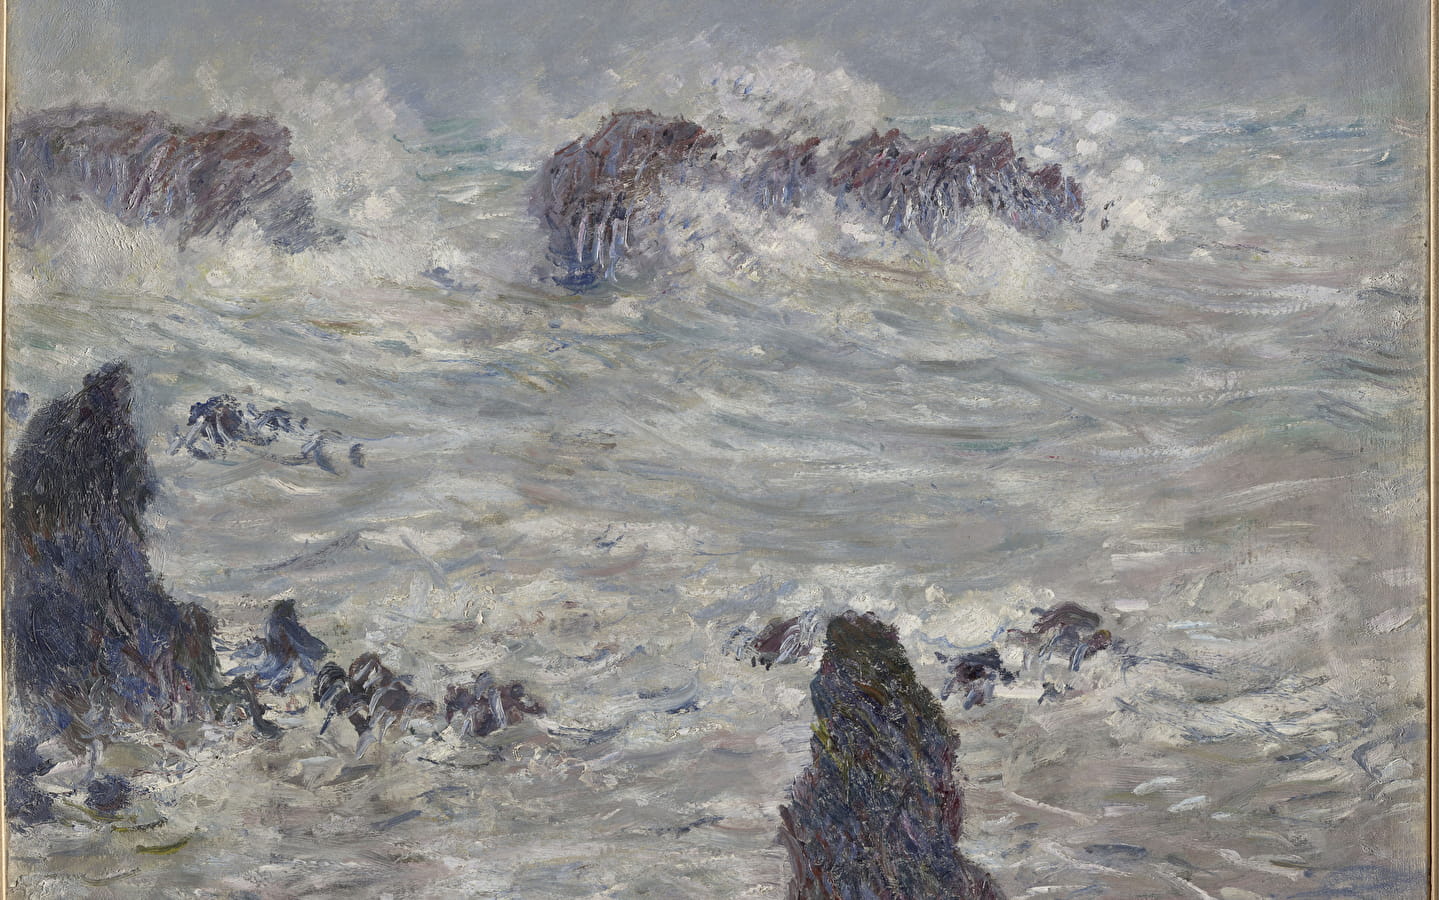 Bruikleen van werken voor de 150e verjaardag van het impressionisme